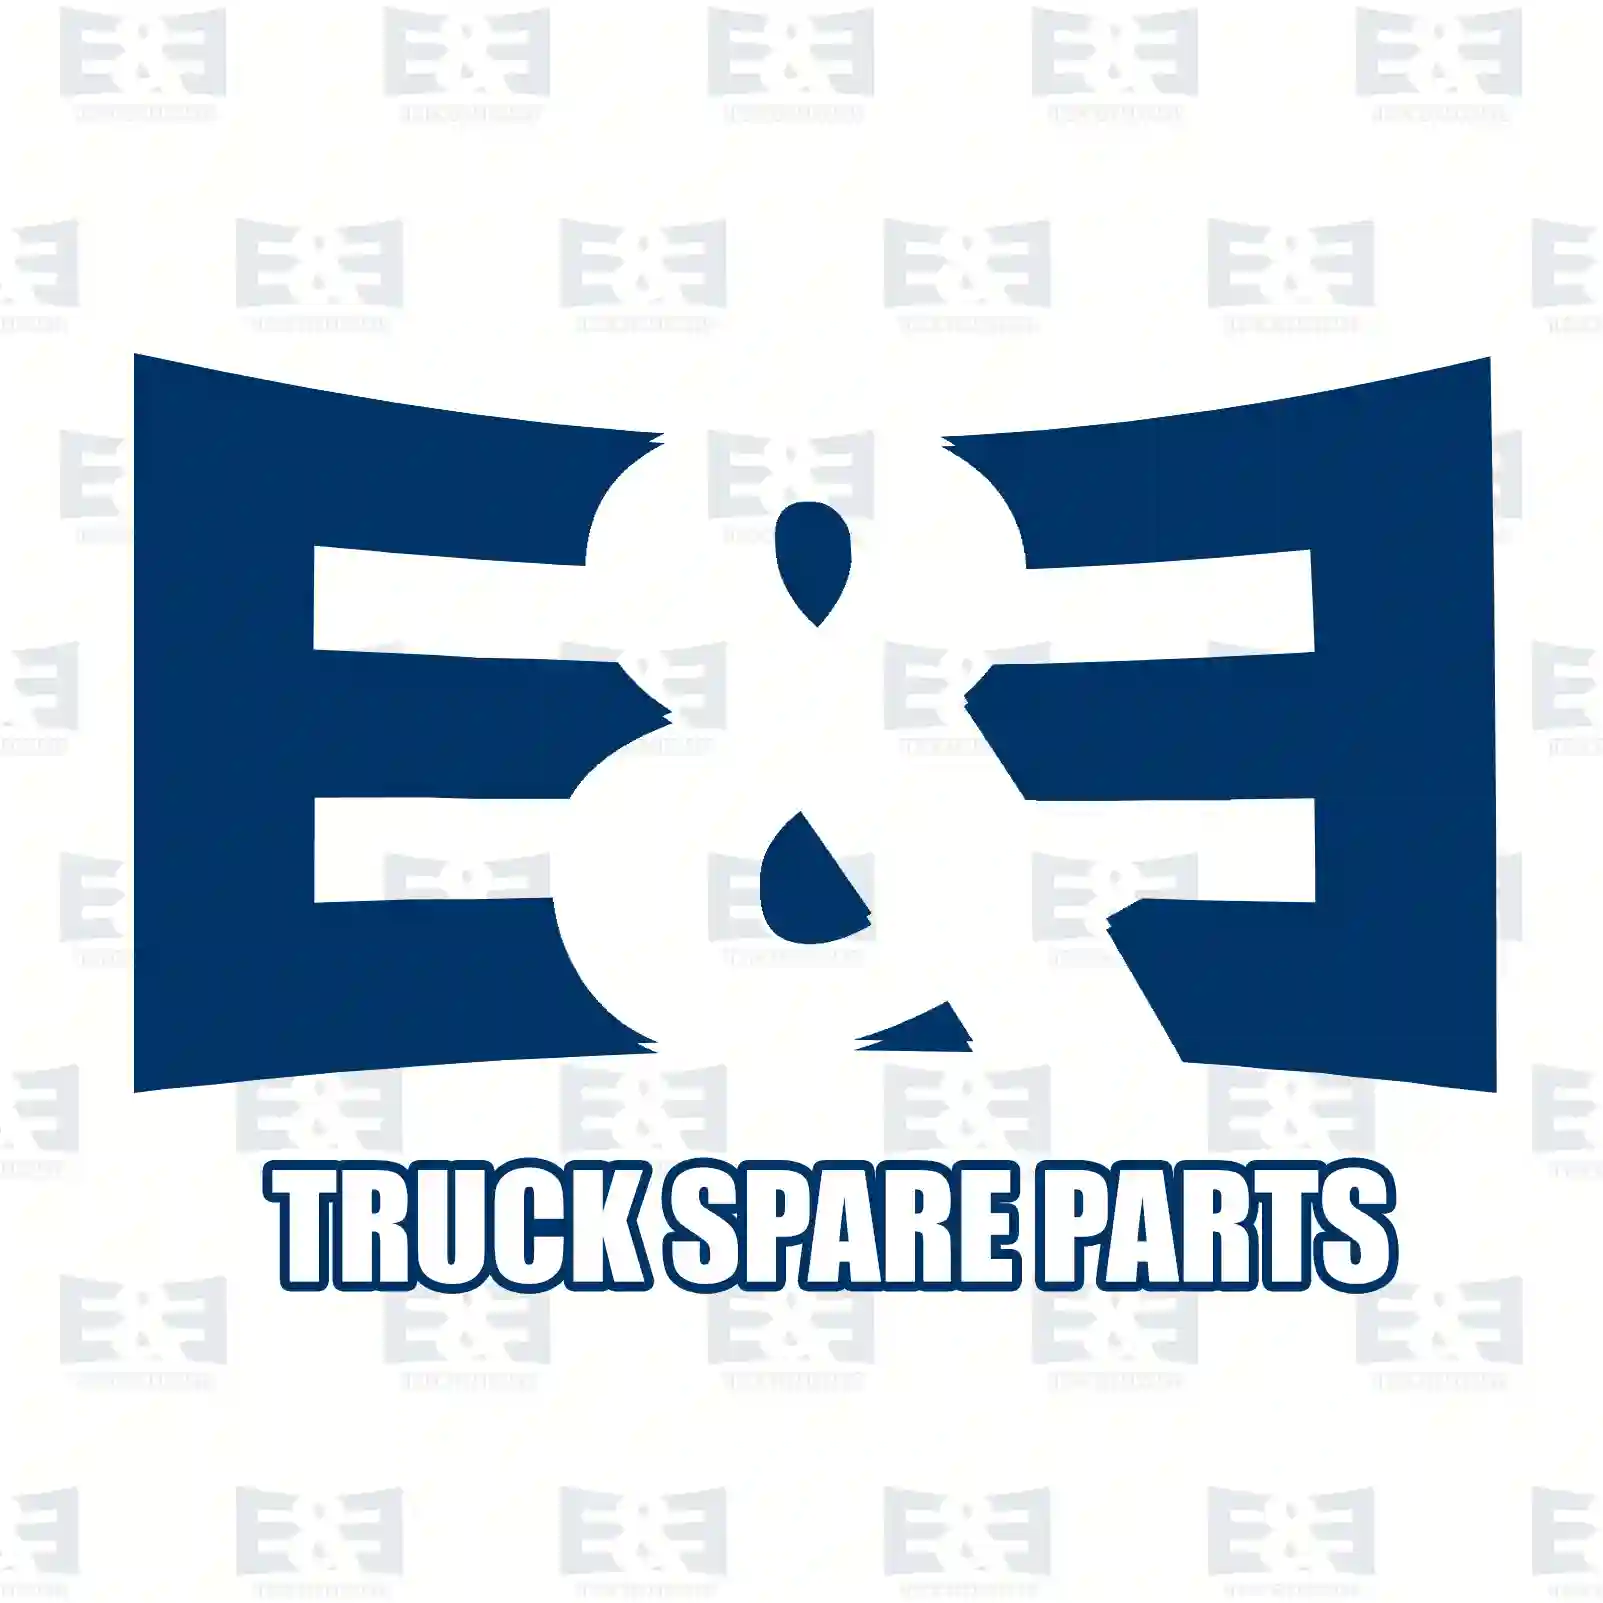 Control valve, 2E2275711, 5001833356, ZG50851-0008 ||  2E2275711 E&E Truck Spare Parts | Truck Spare Parts, Auotomotive Spare Parts Control valve, 2E2275711, 5001833356, ZG50851-0008 ||  2E2275711 E&E Truck Spare Parts | Truck Spare Parts, Auotomotive Spare Parts